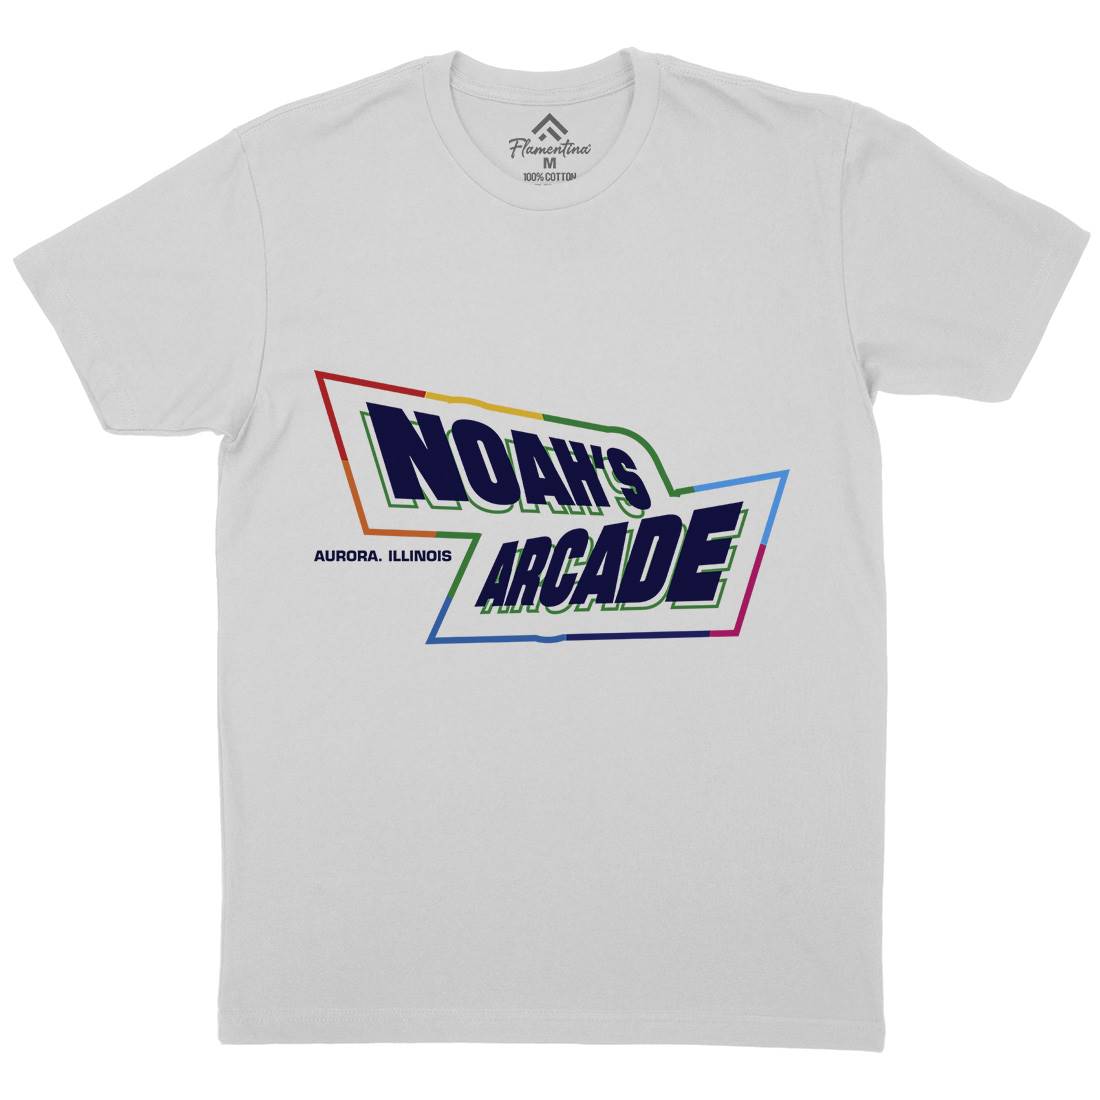 Noahs Arcade Mens Crew Neck T-Shirt Retro D298